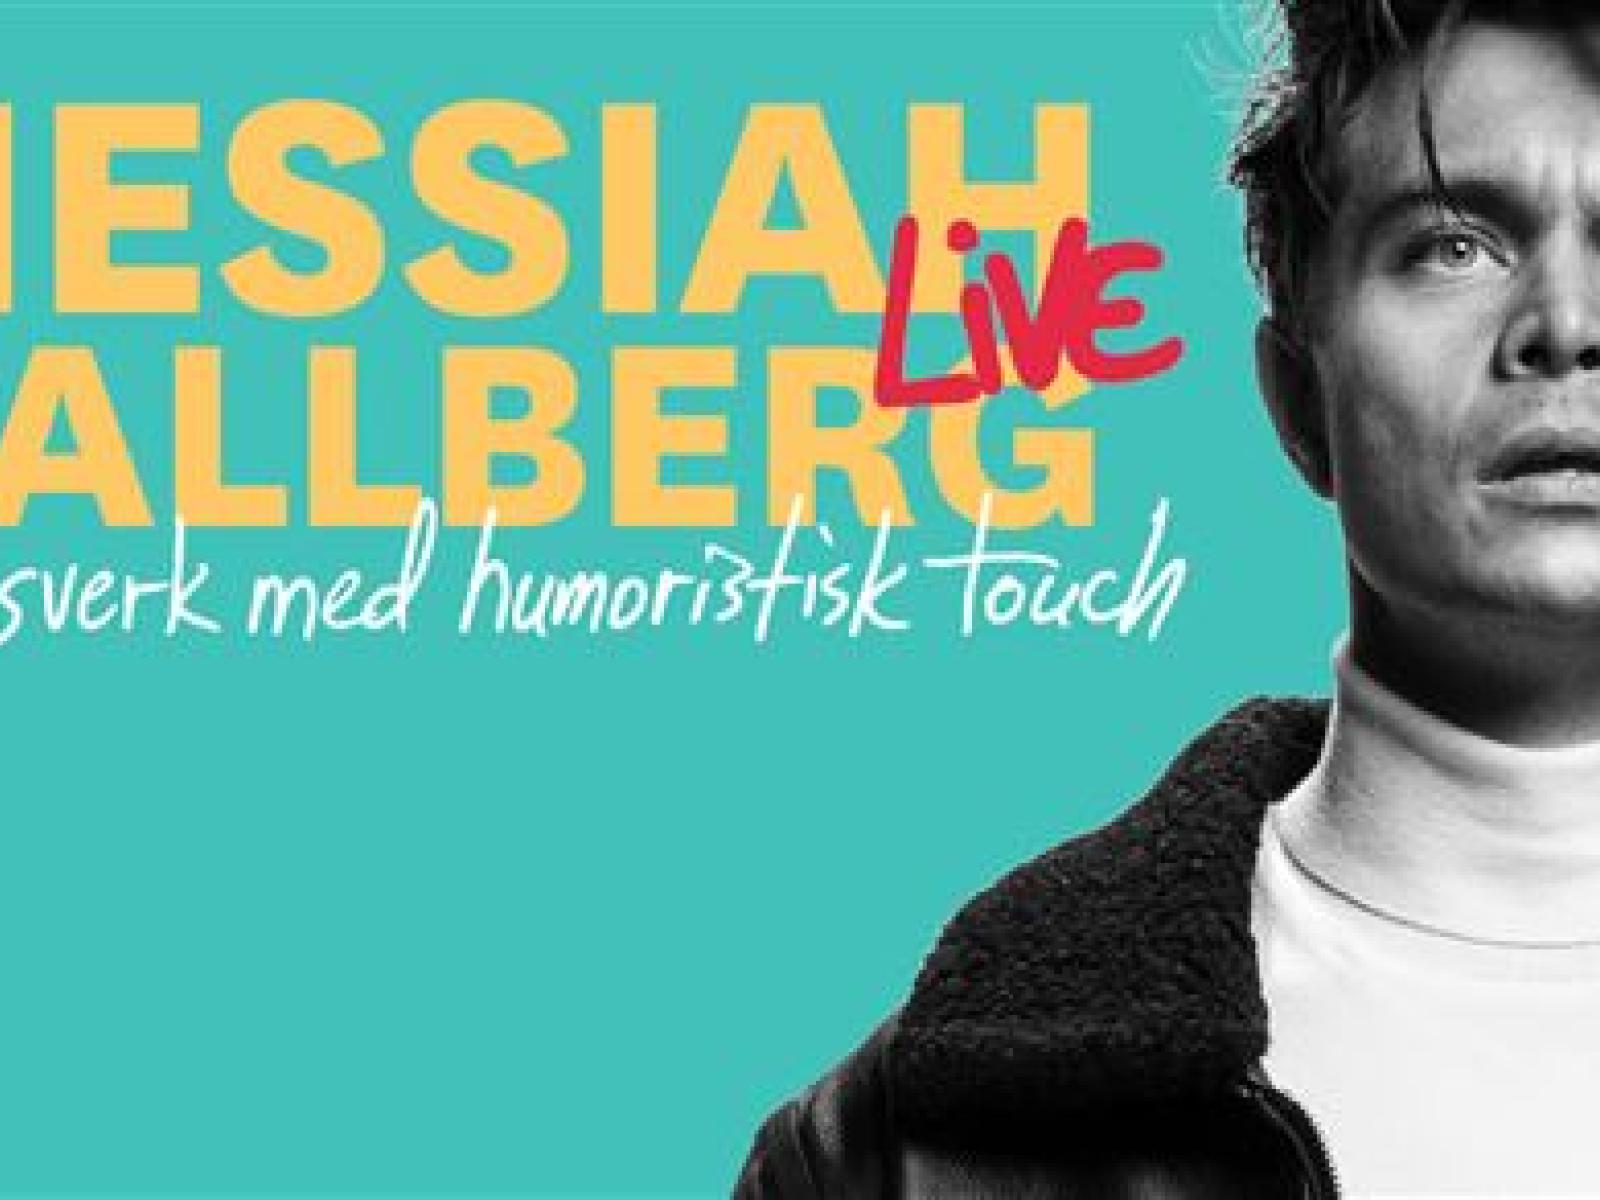 Messiah Hallberg live – Ett livsverk med humoristisk touch